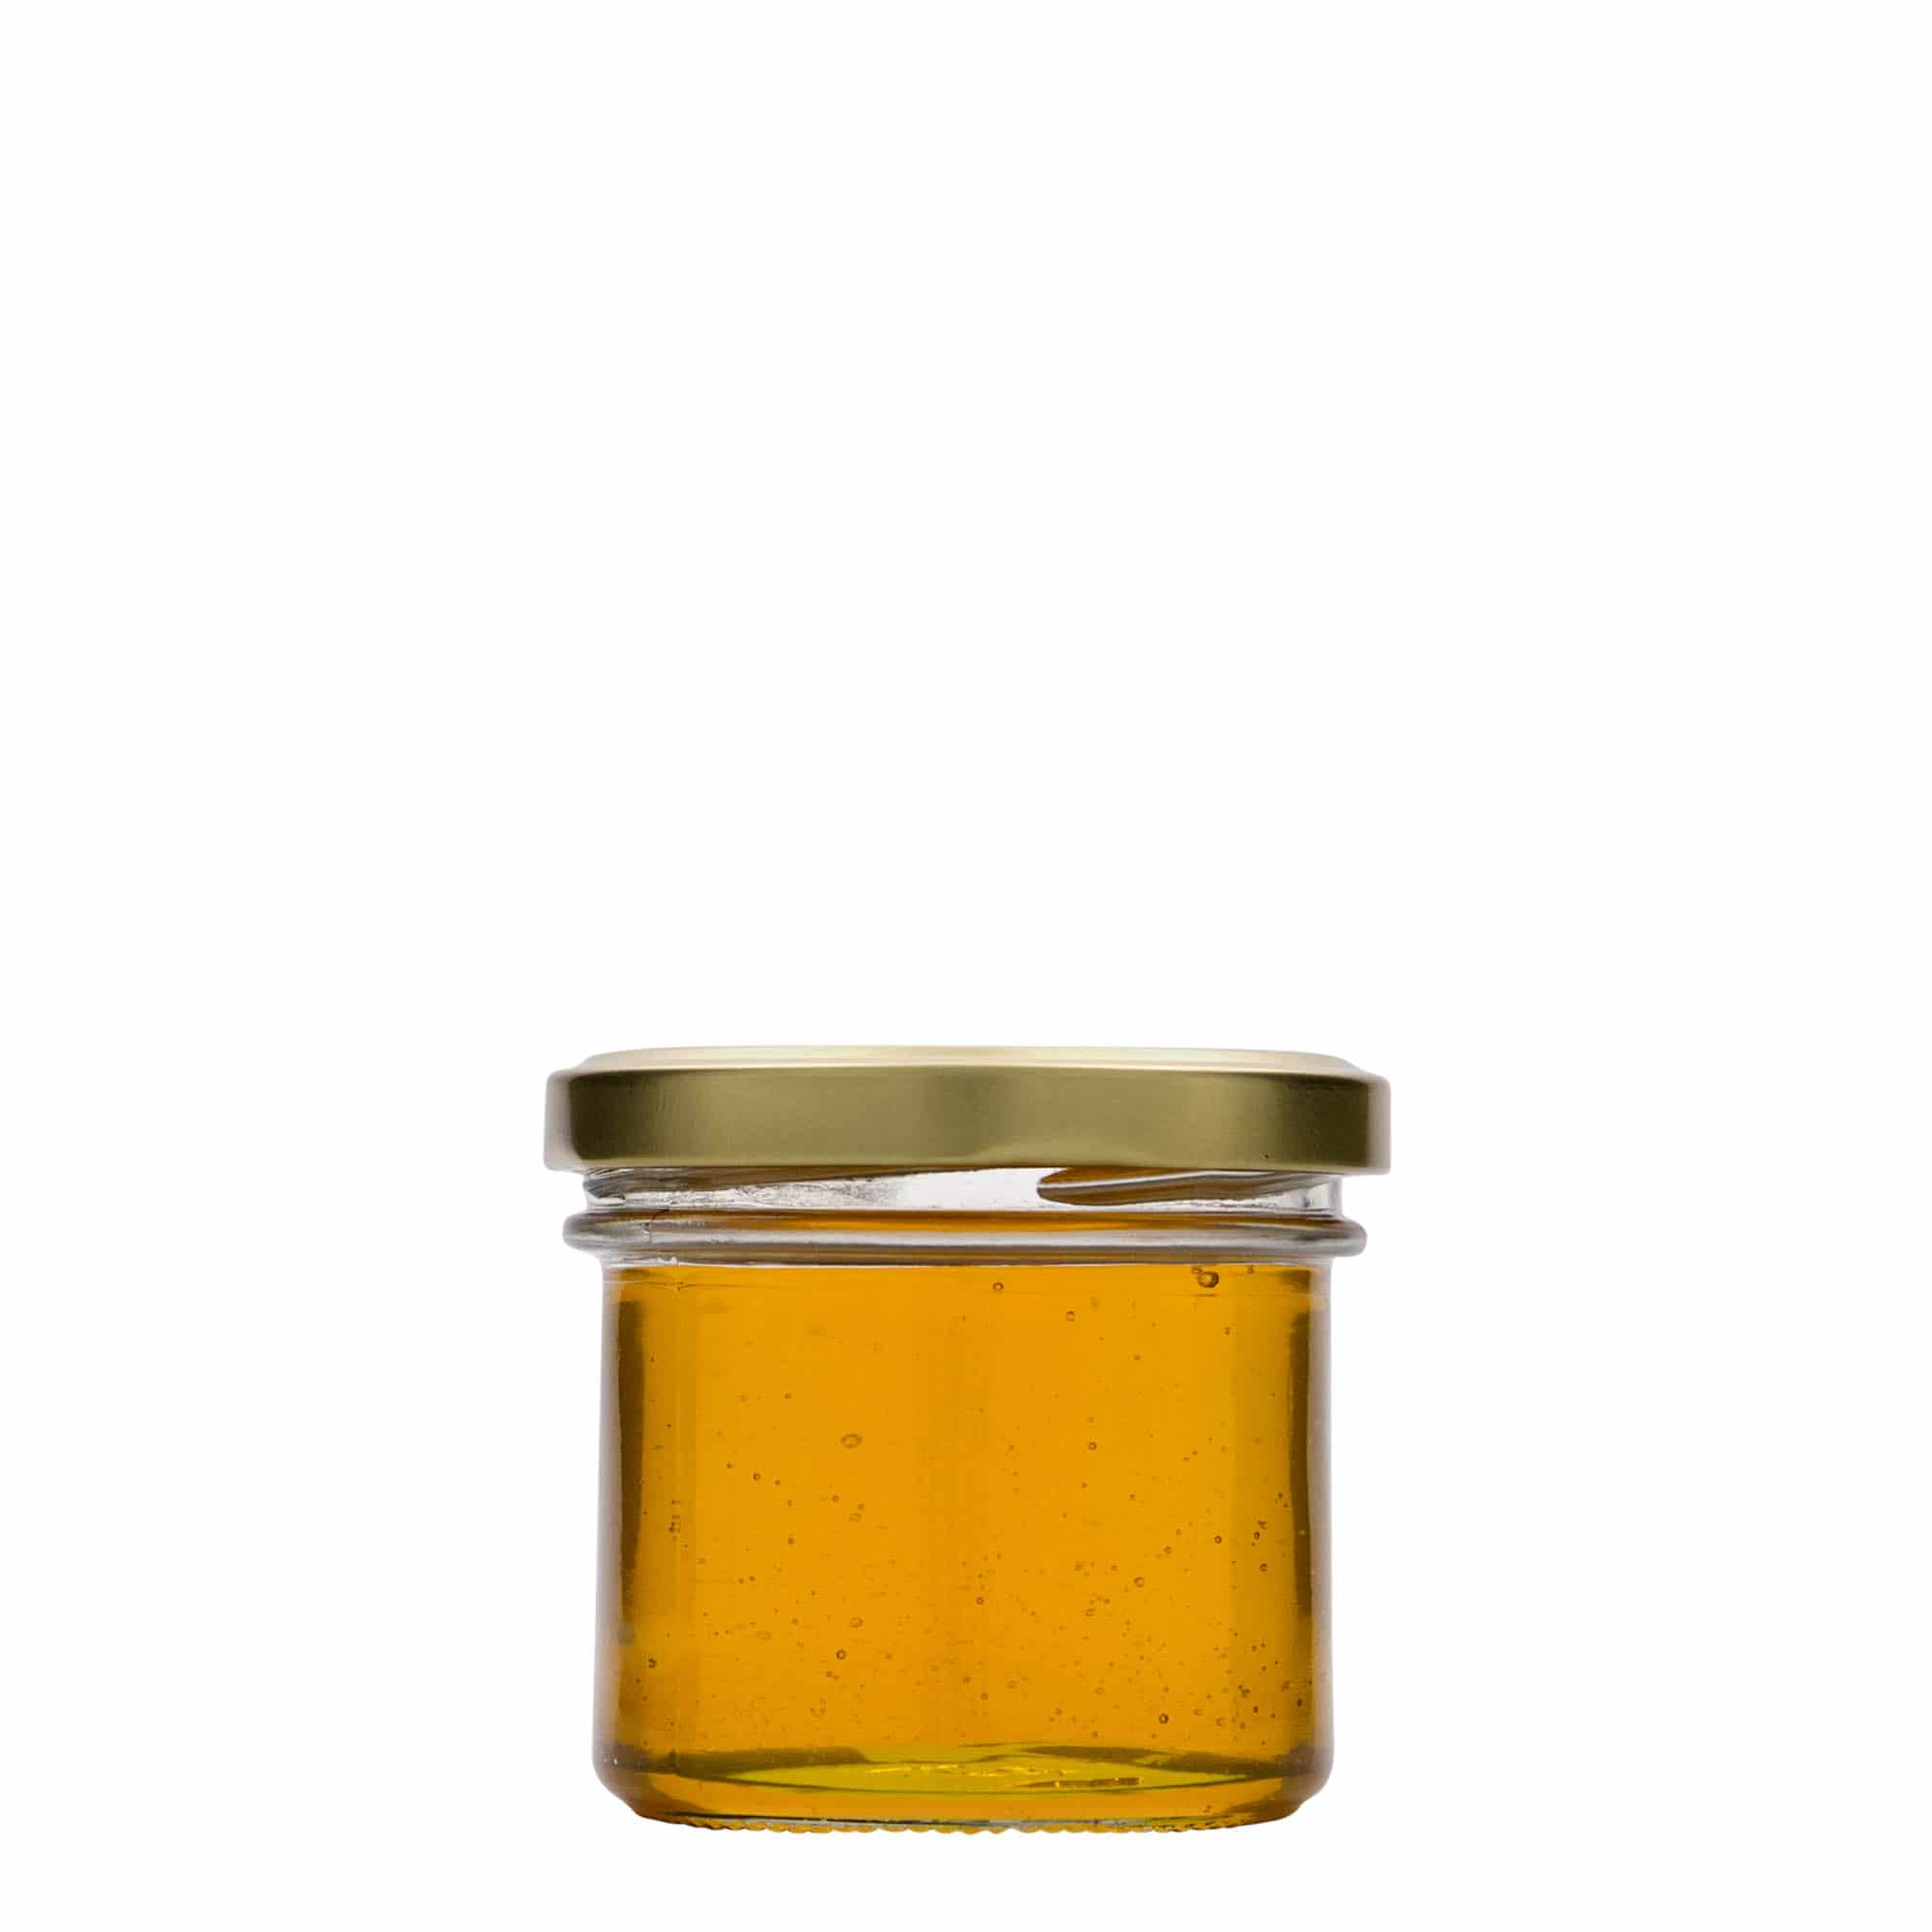 Barattolo cilindrico da 230 ml con coperchio BioSeal oro UN.., da 200ml a  299ml, Barattoli per conserve con coperchio, Barattoli per conserve ( barattoli twist-off), Prodotti in vetro